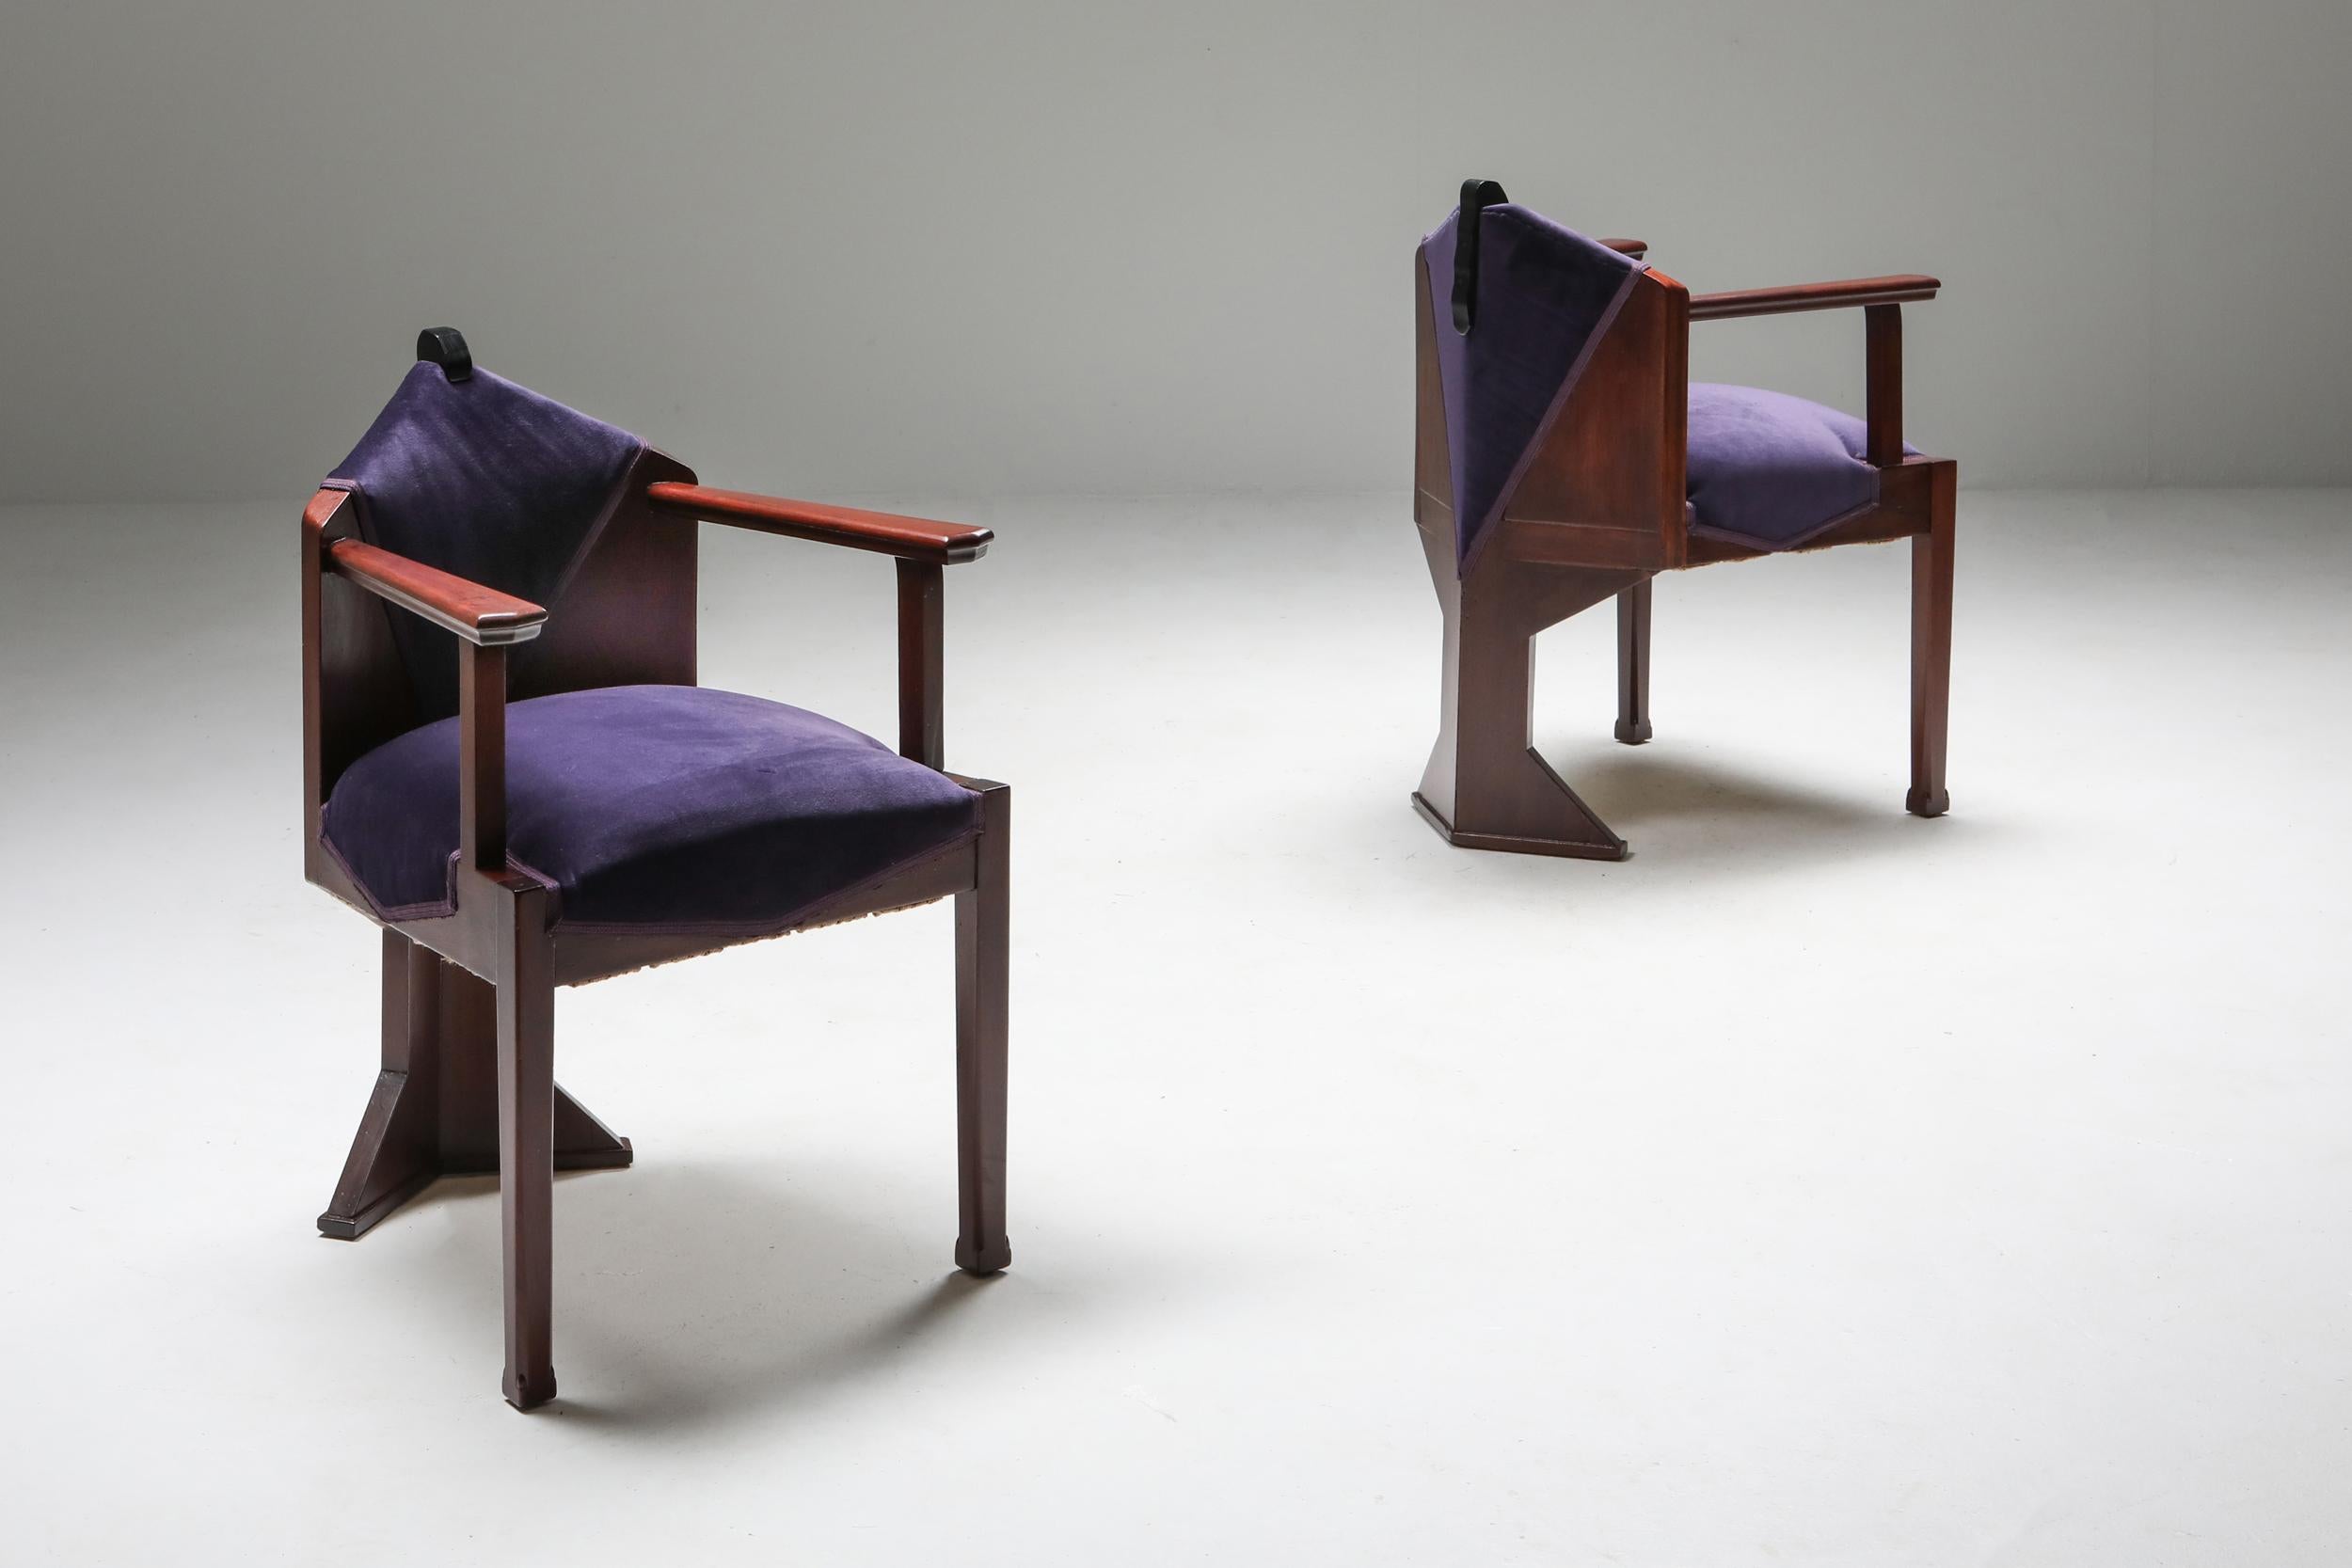 Paar Sessel der Amsterdamer Schule, Michel de Klerk zugeschrieben.
Atelier Speelman Paar Sessel, Gestell aus massivem Mahagoni und Ebenholz, Polsterung aus lila Samt. Ungewöhnliche, hochwertige Stücke, die sehr selten zu bekommen sind.

 